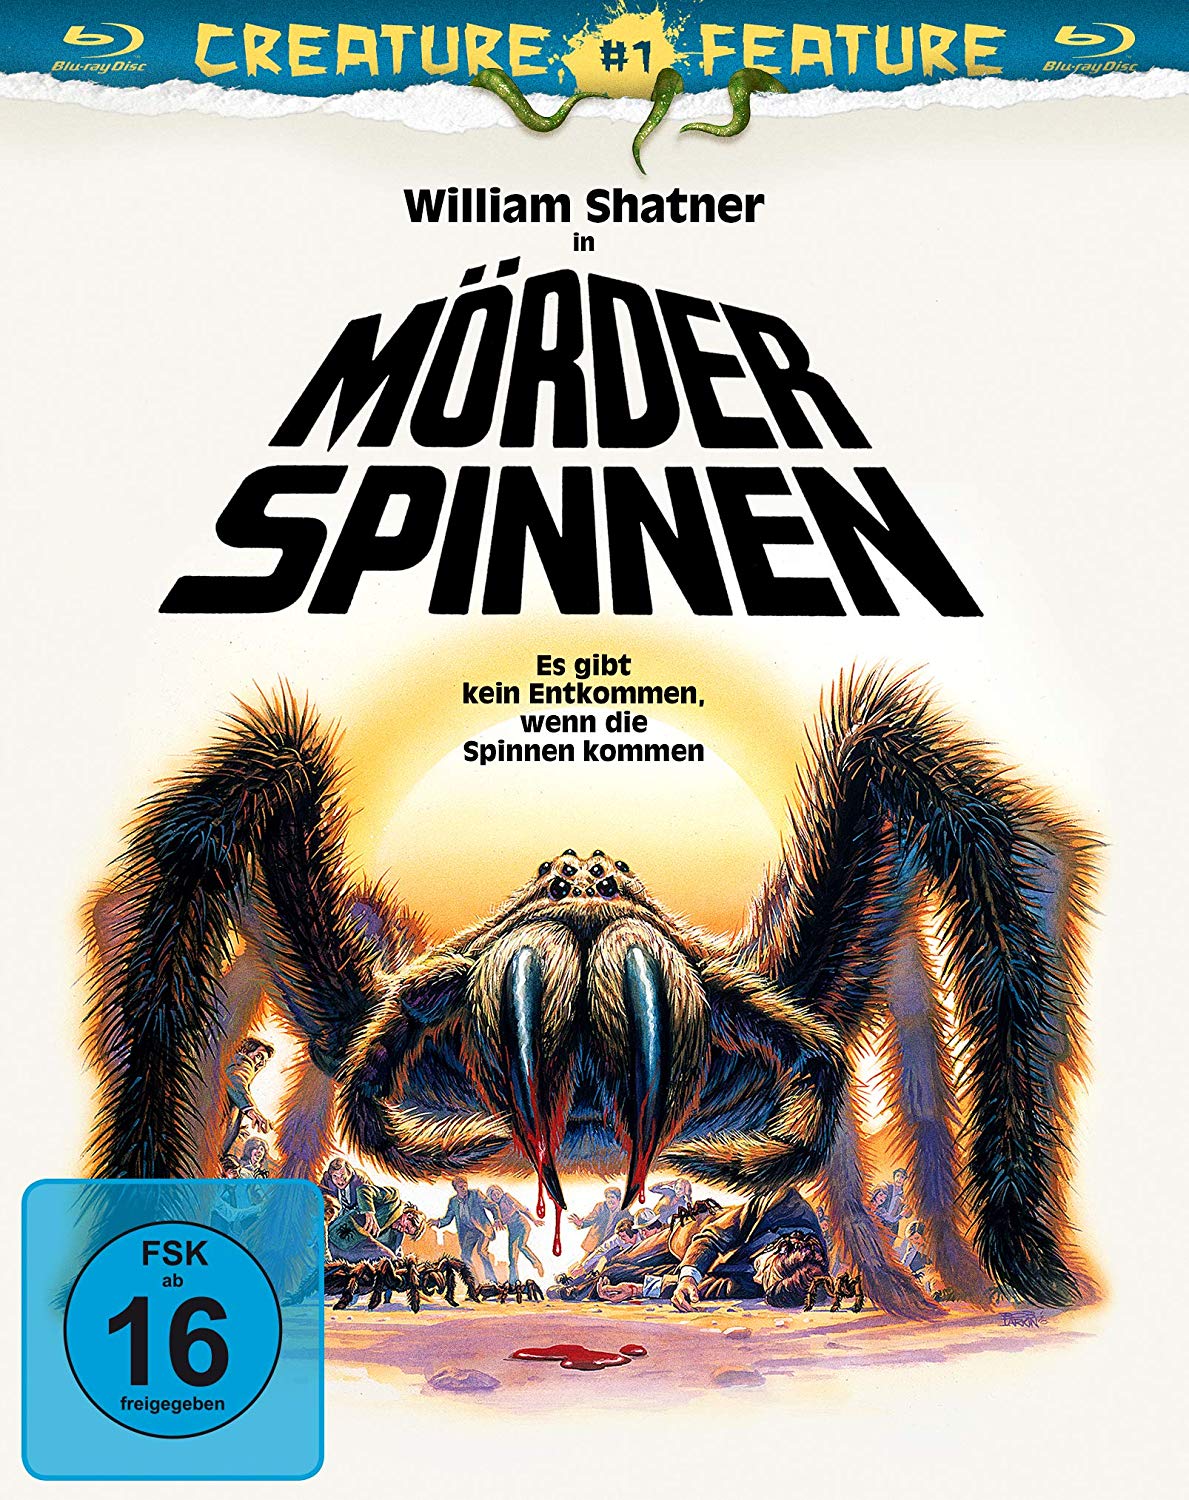 Hurenween Special – Mörderspinnen (1977) – Ab sofort in der Reihe „Creature  Feature“ auf DVD und Blu-ray im Handel erhältlich – Die Medienhuren